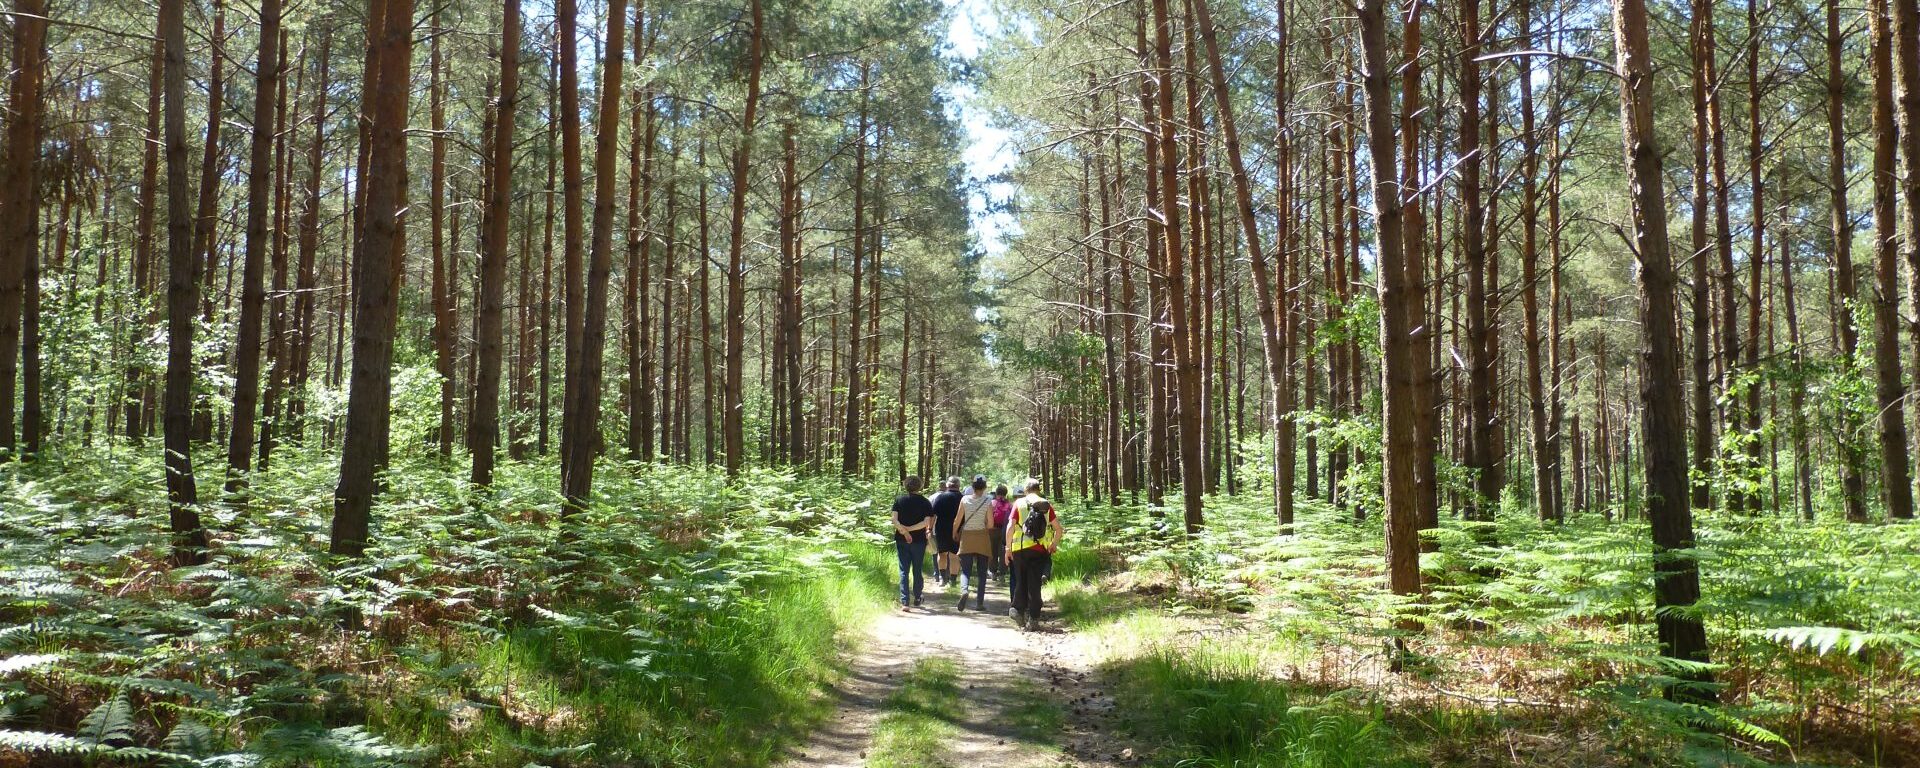 Condé-sur-Vesgre Forest